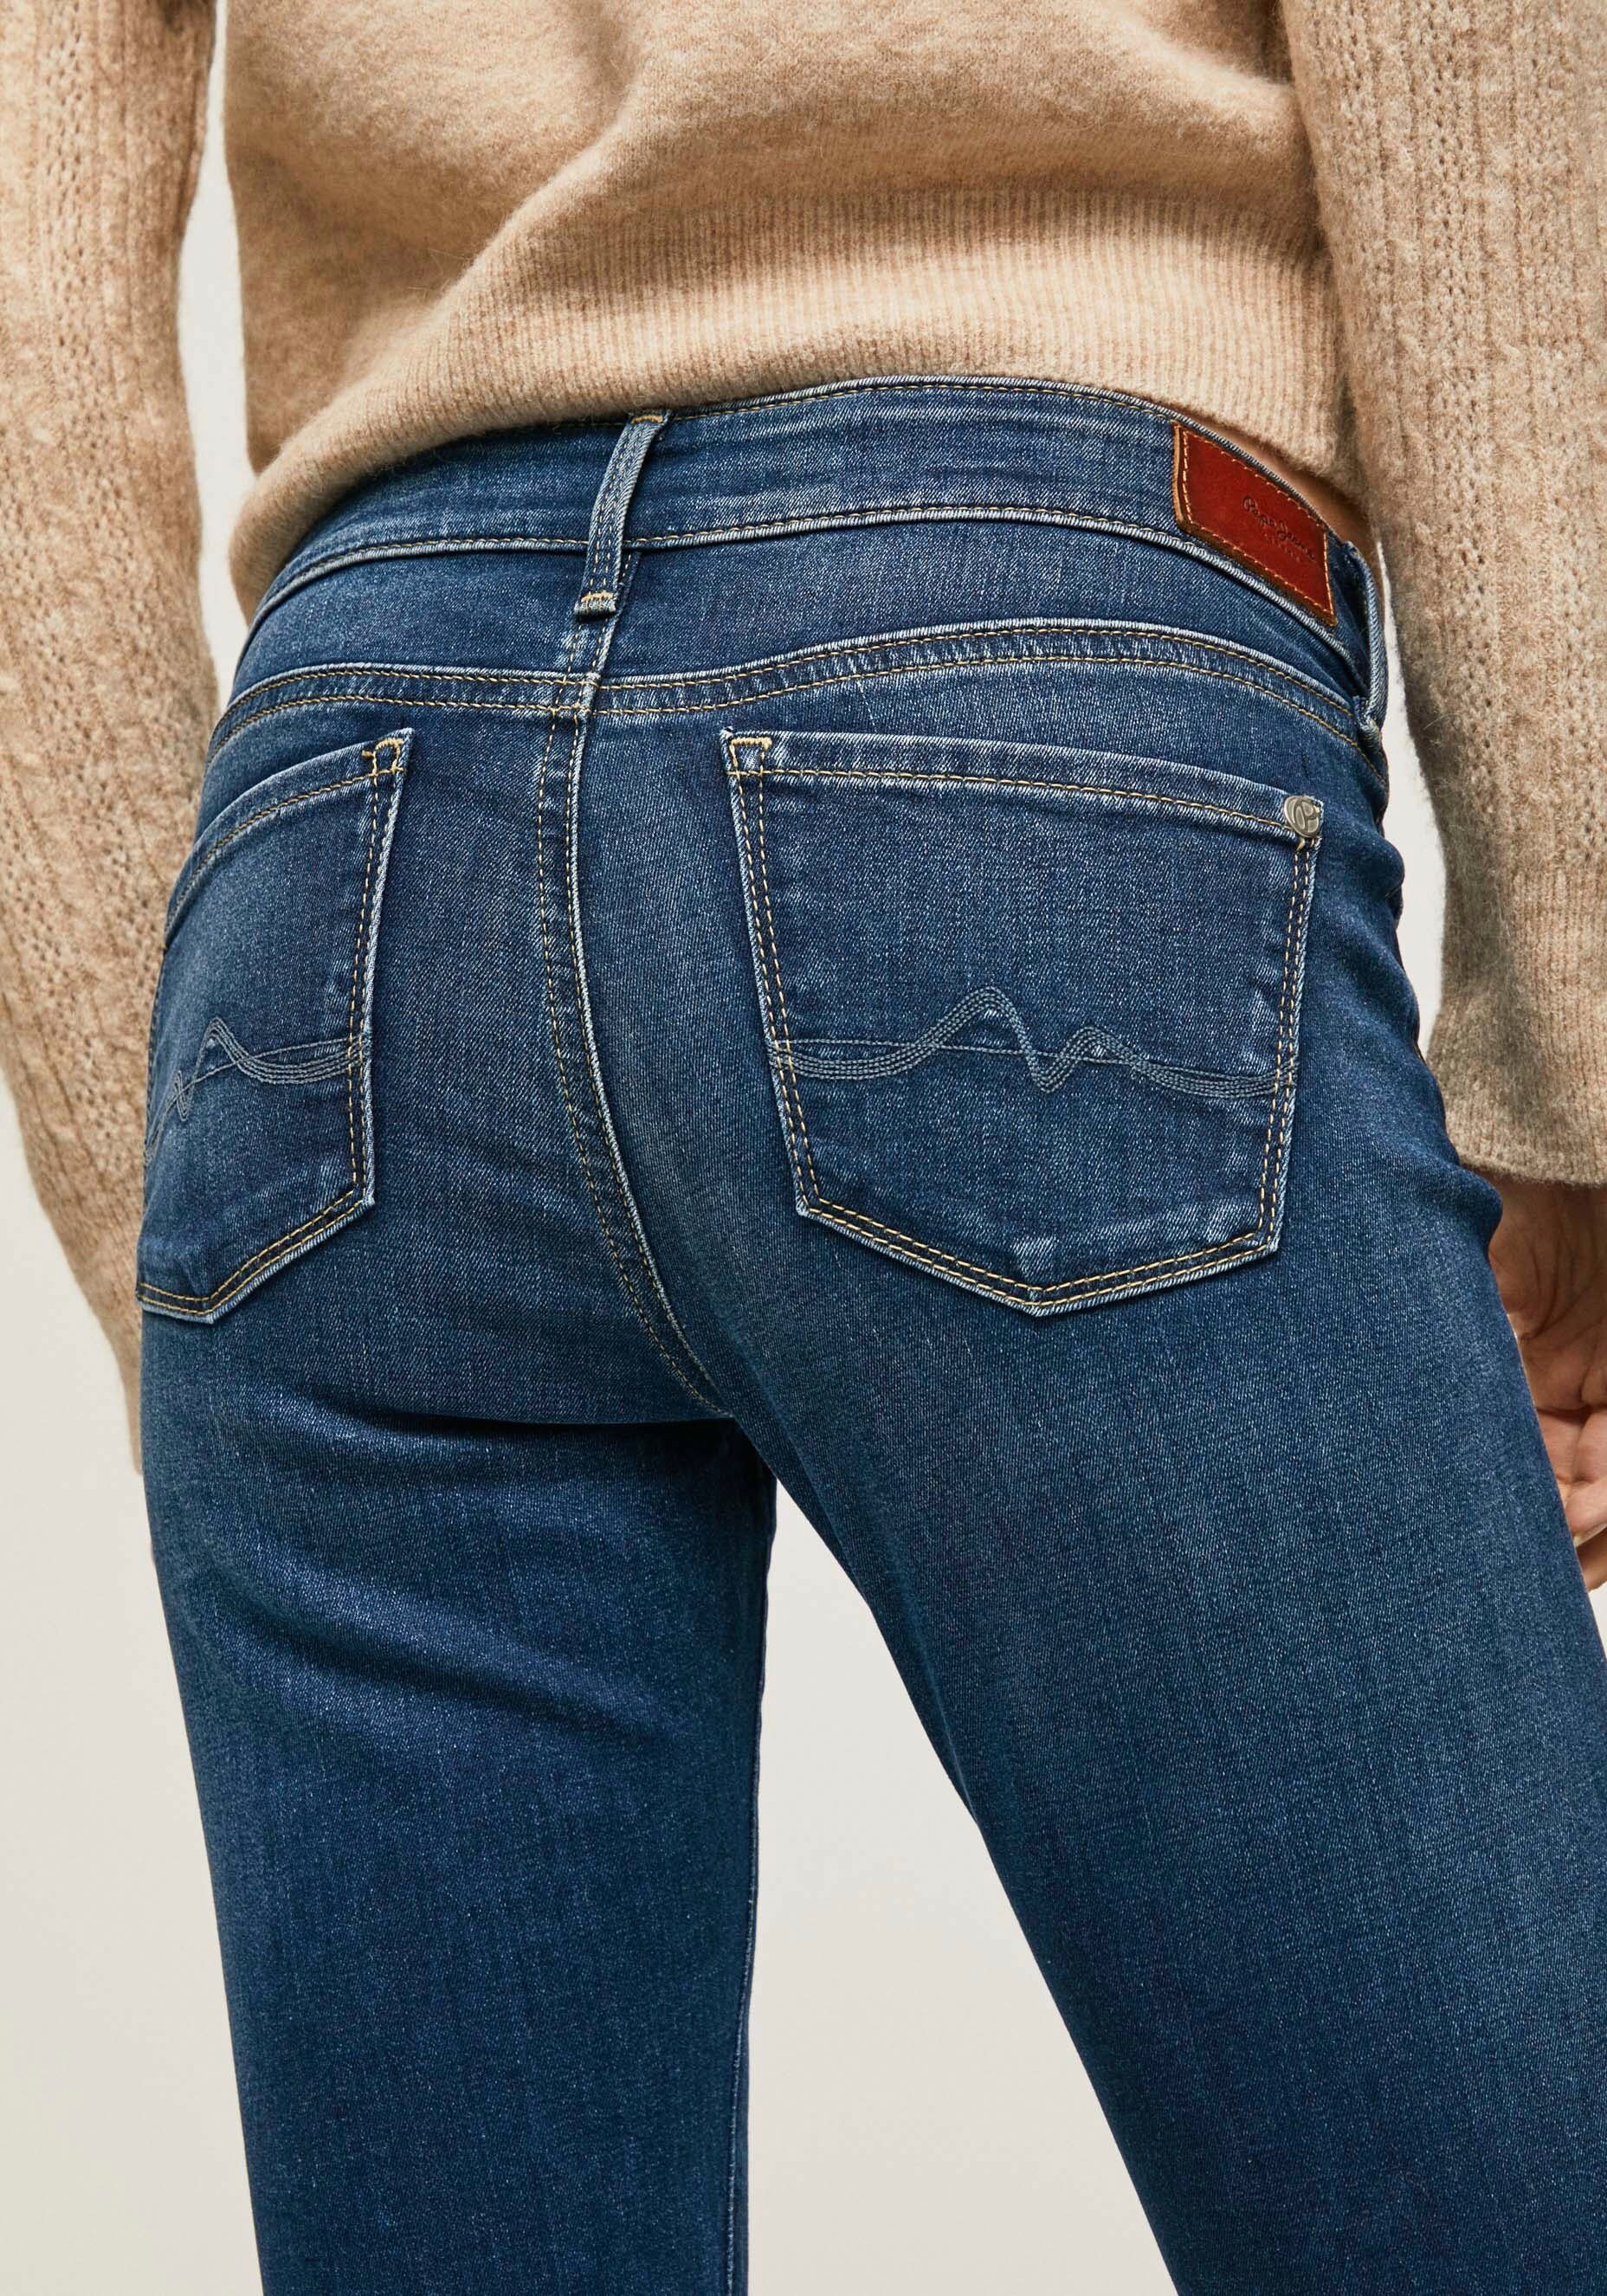 Pepe Jeans Skinny-fit-Jeans SOHO worn 1-Knopf mit Stretch-Anteil und used Bund im 5-Pocket-Stil dark